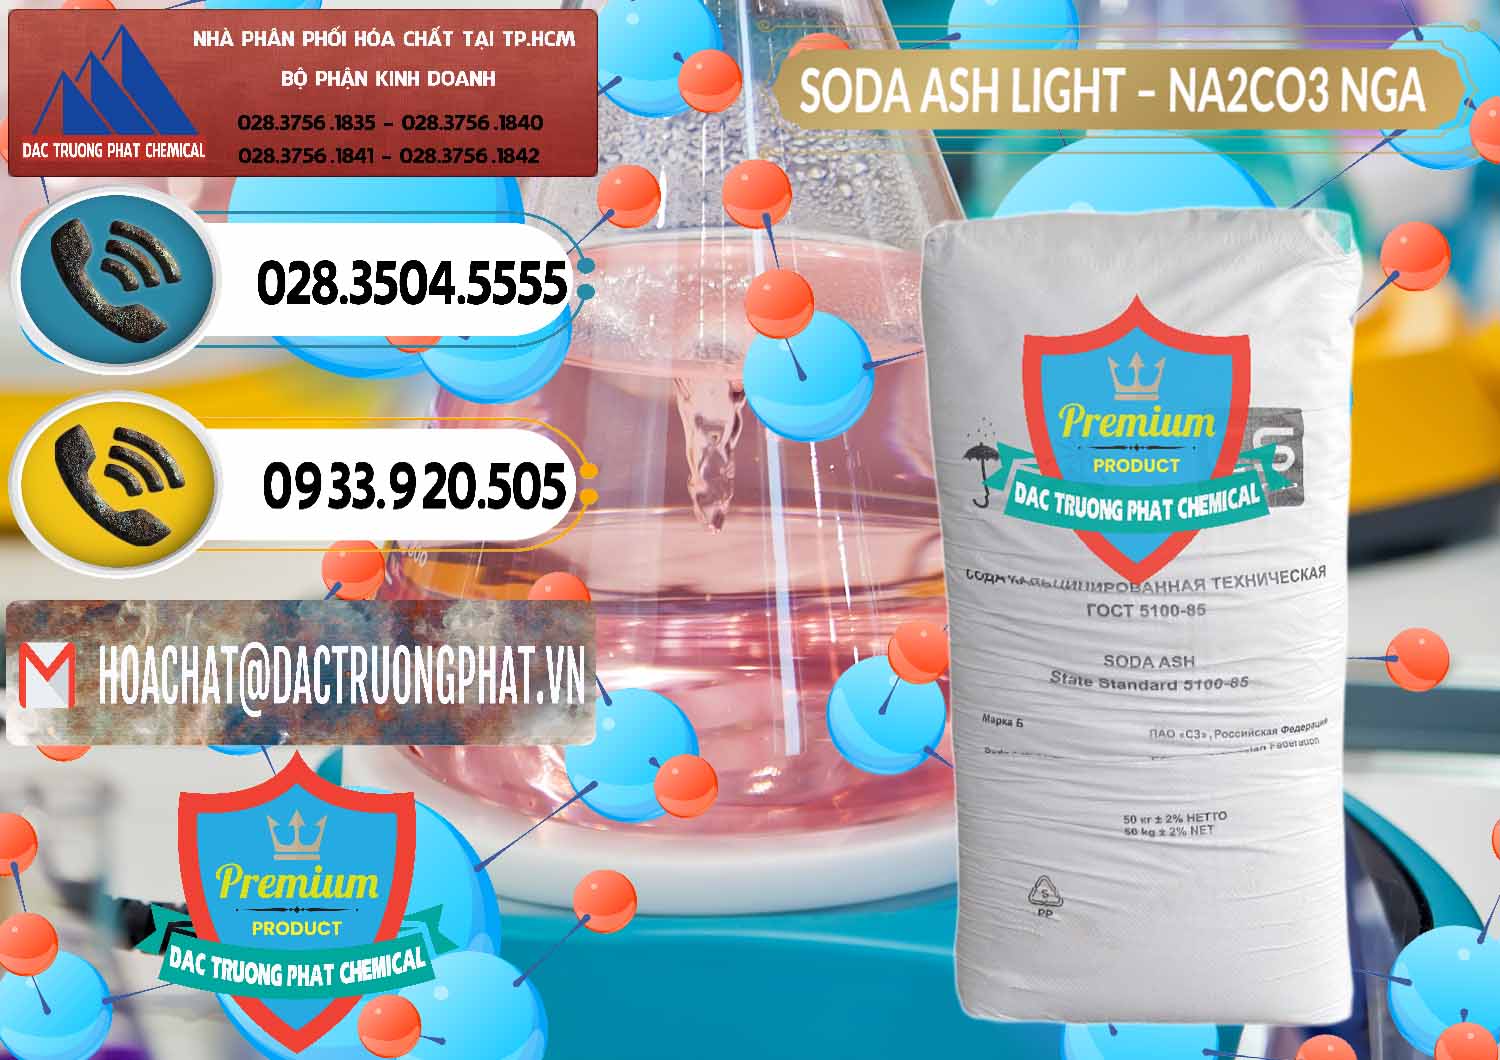 Chuyên cung cấp và bán Soda Ash Light - NA2CO3 Nga Russia - 0128 - Nơi cung cấp - phân phối hóa chất tại TP.HCM - hoachatdetnhuom.vn